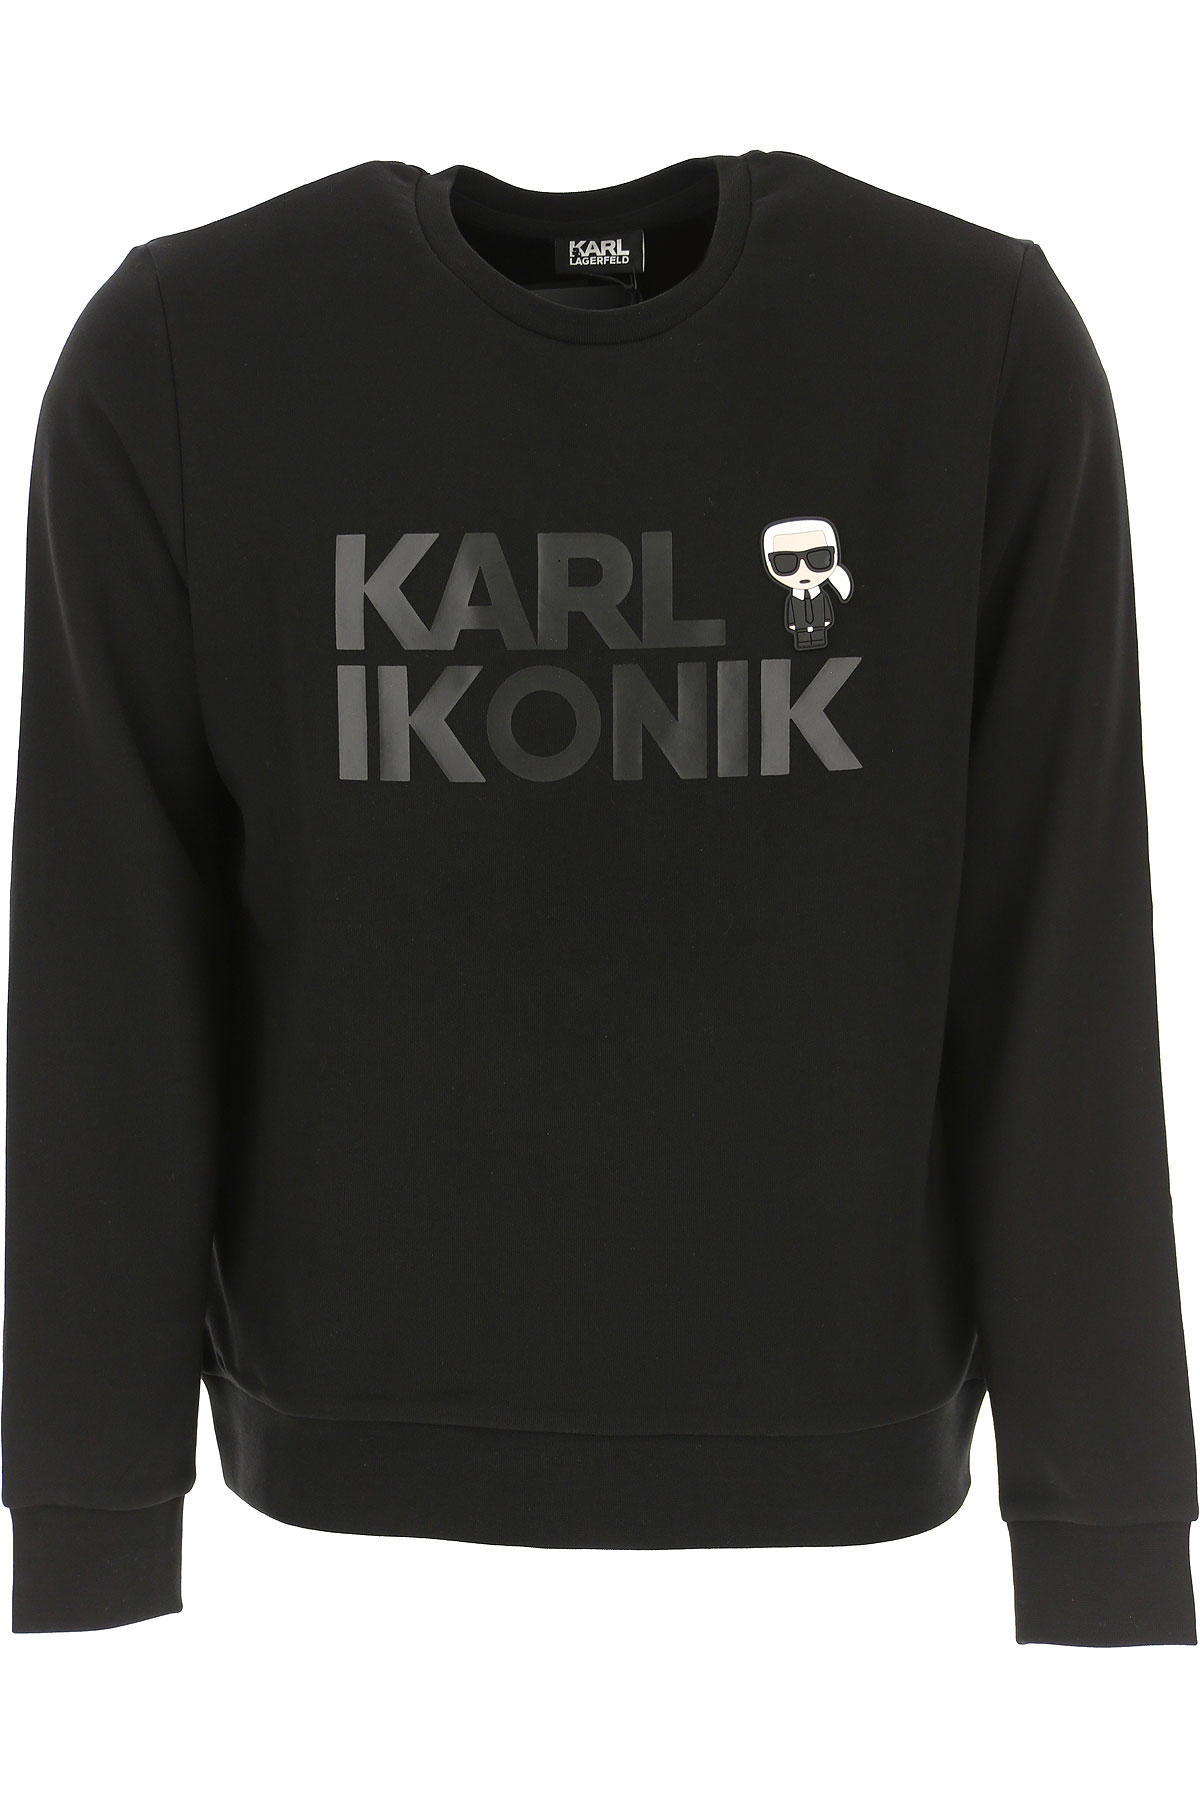 Karl Lagerfeld Sweatshirt für Herren, Kapuzenpulli, Hoodie, Sweats Günstig im Sale, Schwarz, Baumwolle, 2017, L M XL XXL